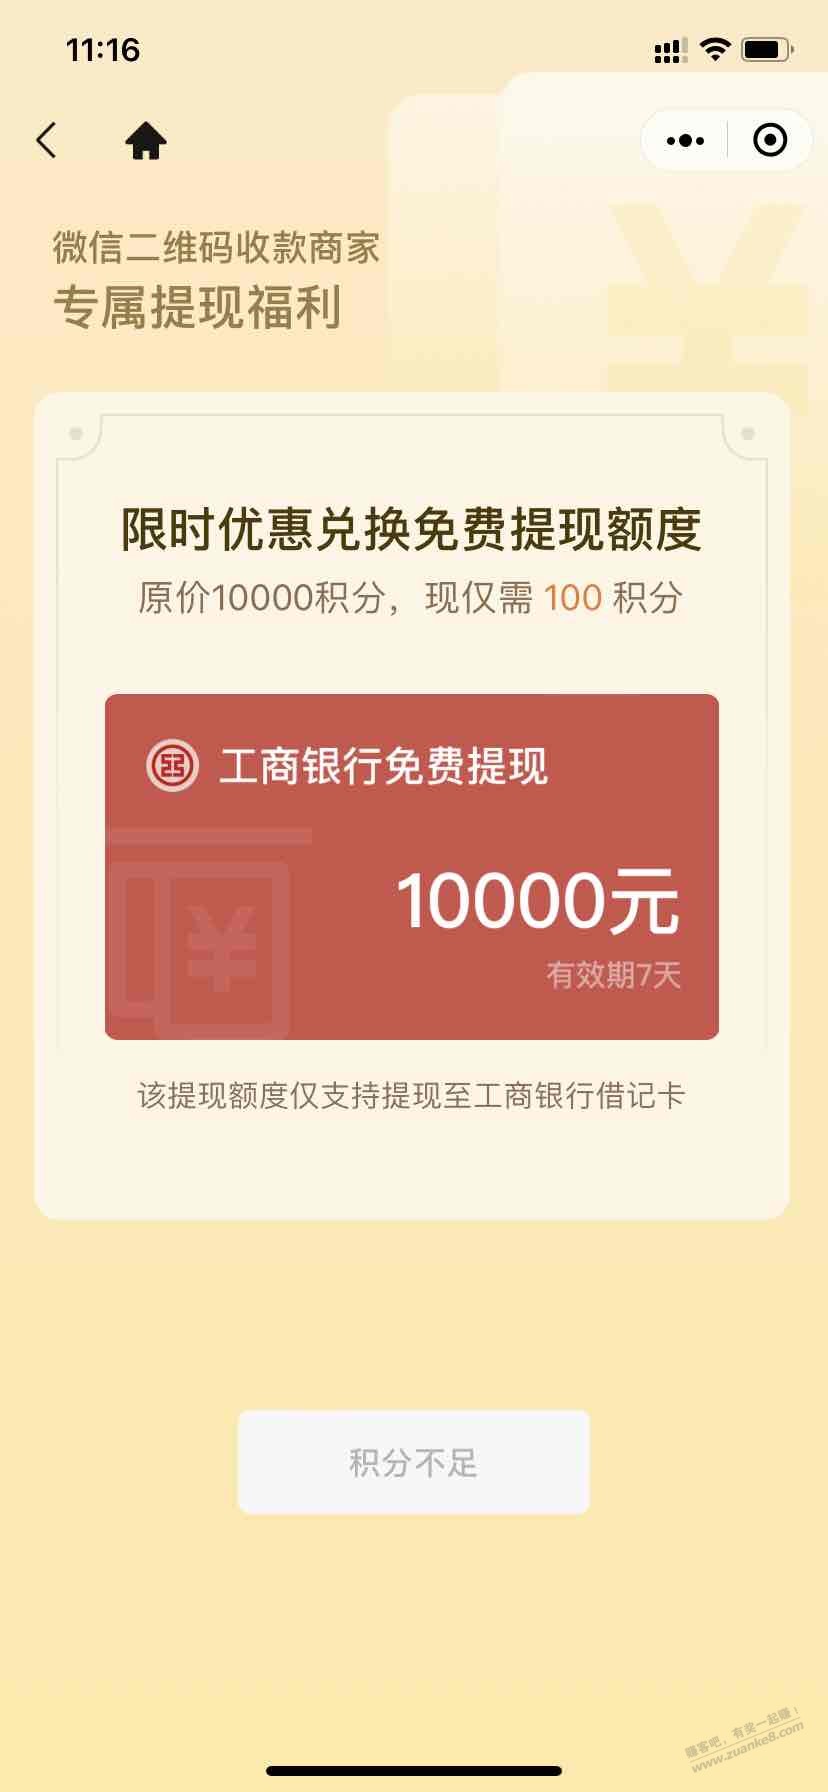 V.x商家提现到工商银行卡-100积分兑换一万额度-开店的很好用-惠小助(52huixz.com)